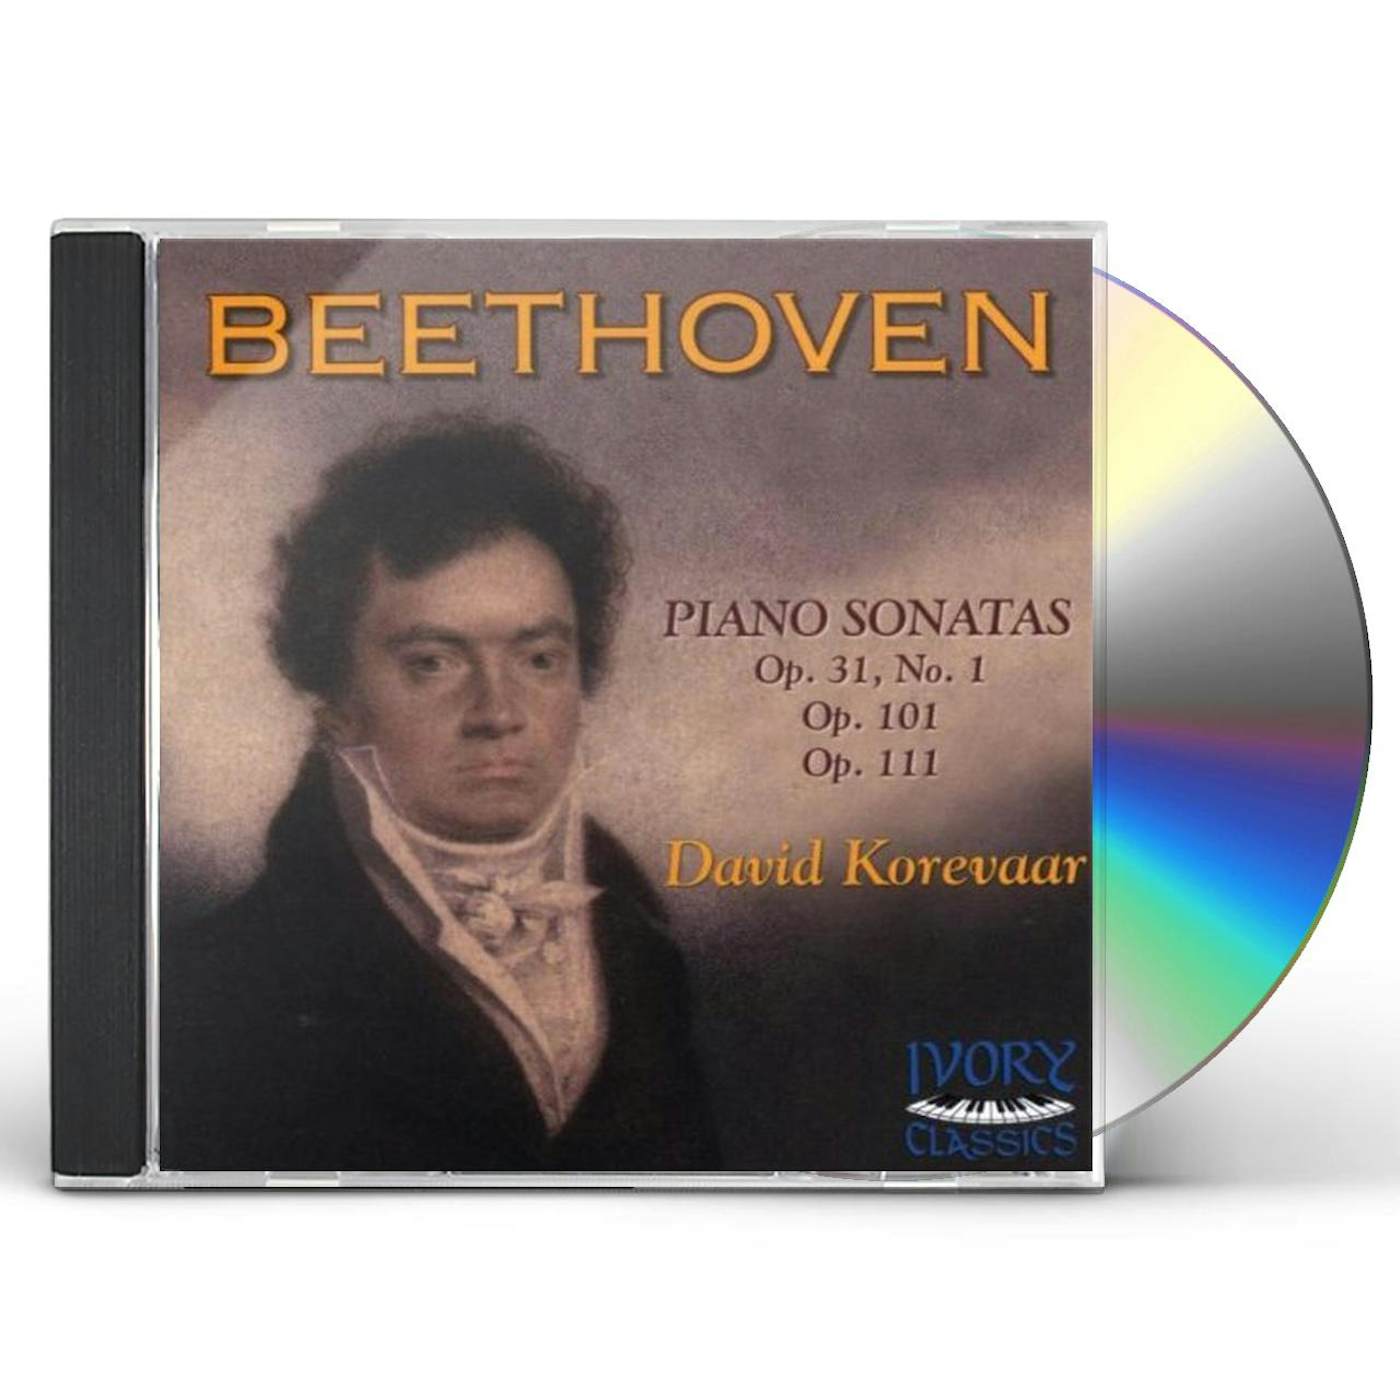 DAVID KOREVAAR PLAYS BEETHOVEN CD